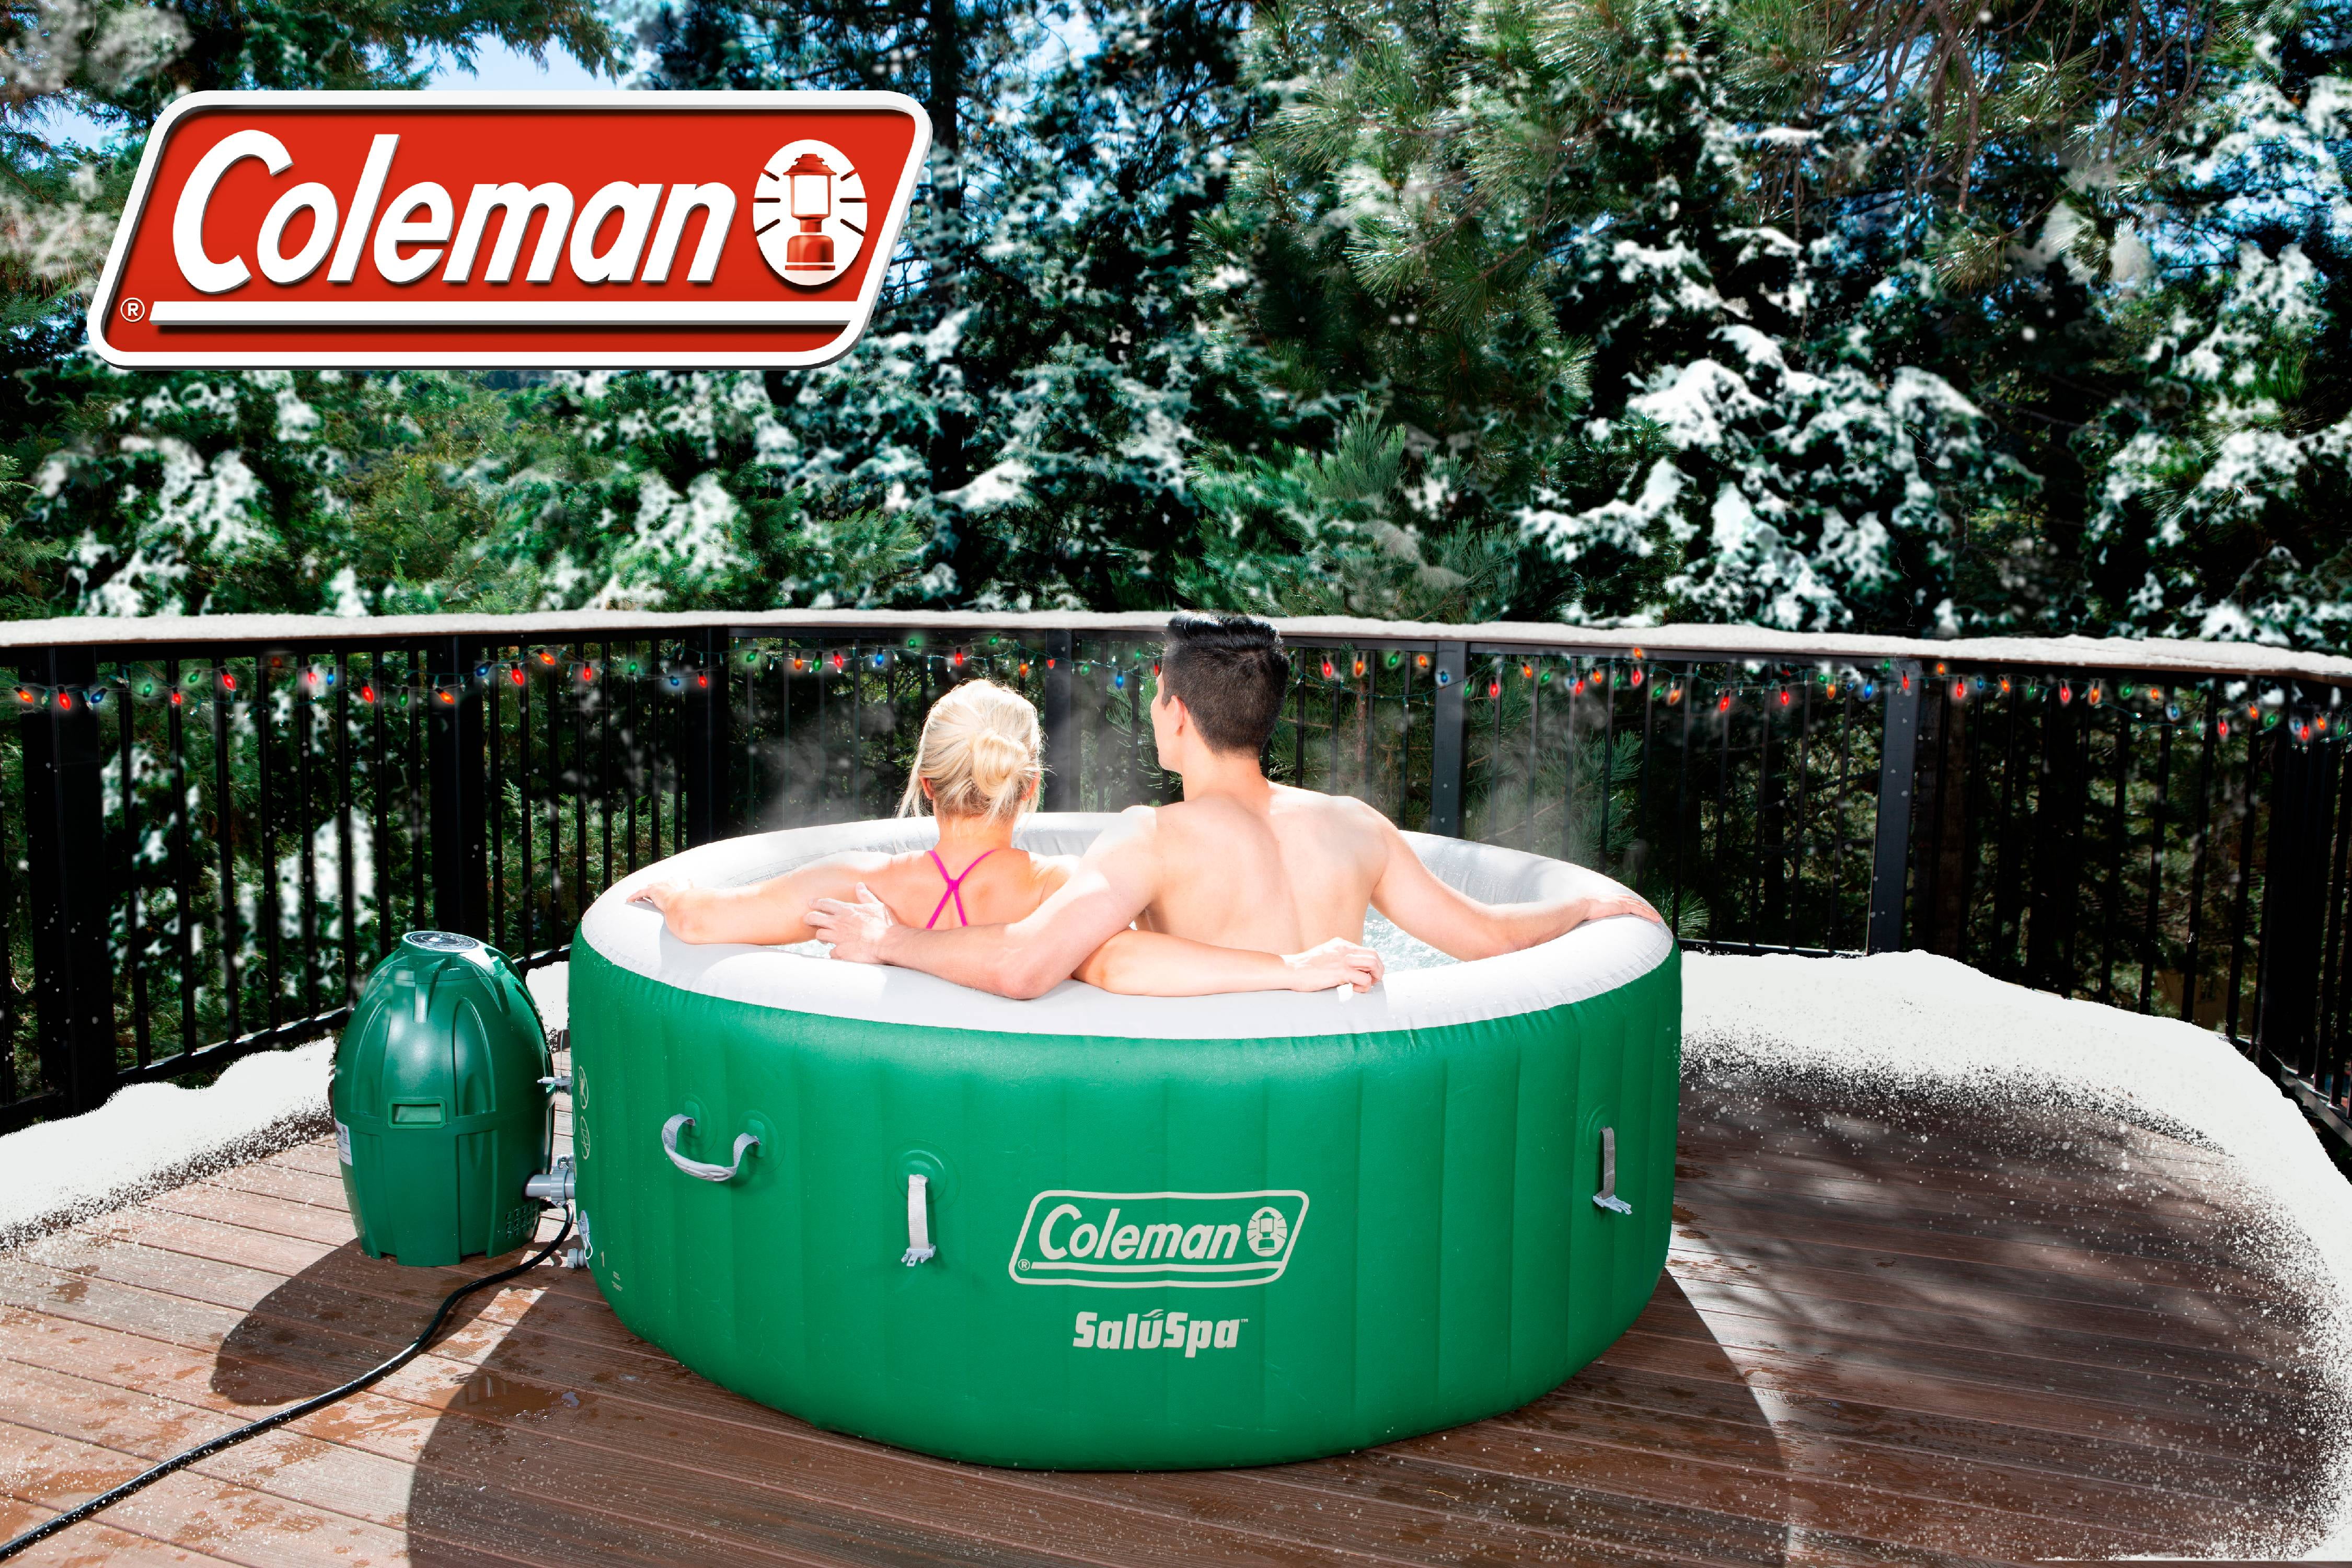 Coleman Saluspa Inflatable Hot Tub Walmart Com